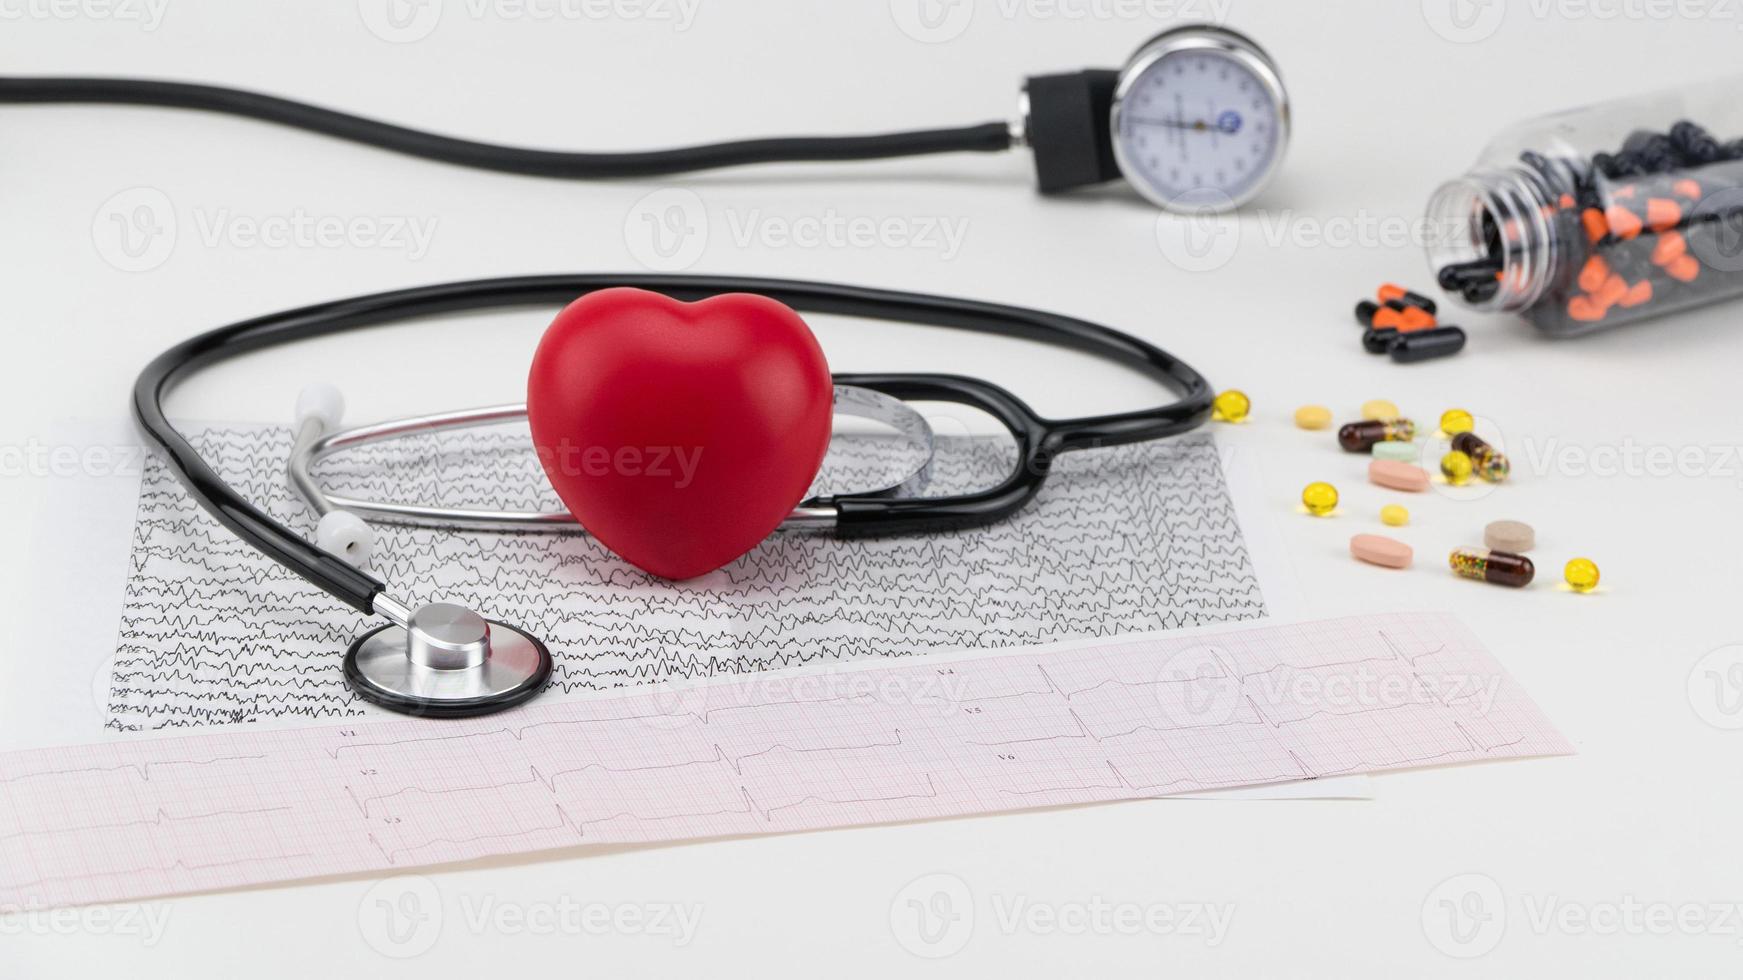 stethoscoop op cardiogram en speelgoedhart. begrip gezondheidszorg. cardiologie - zorg voor het hart foto